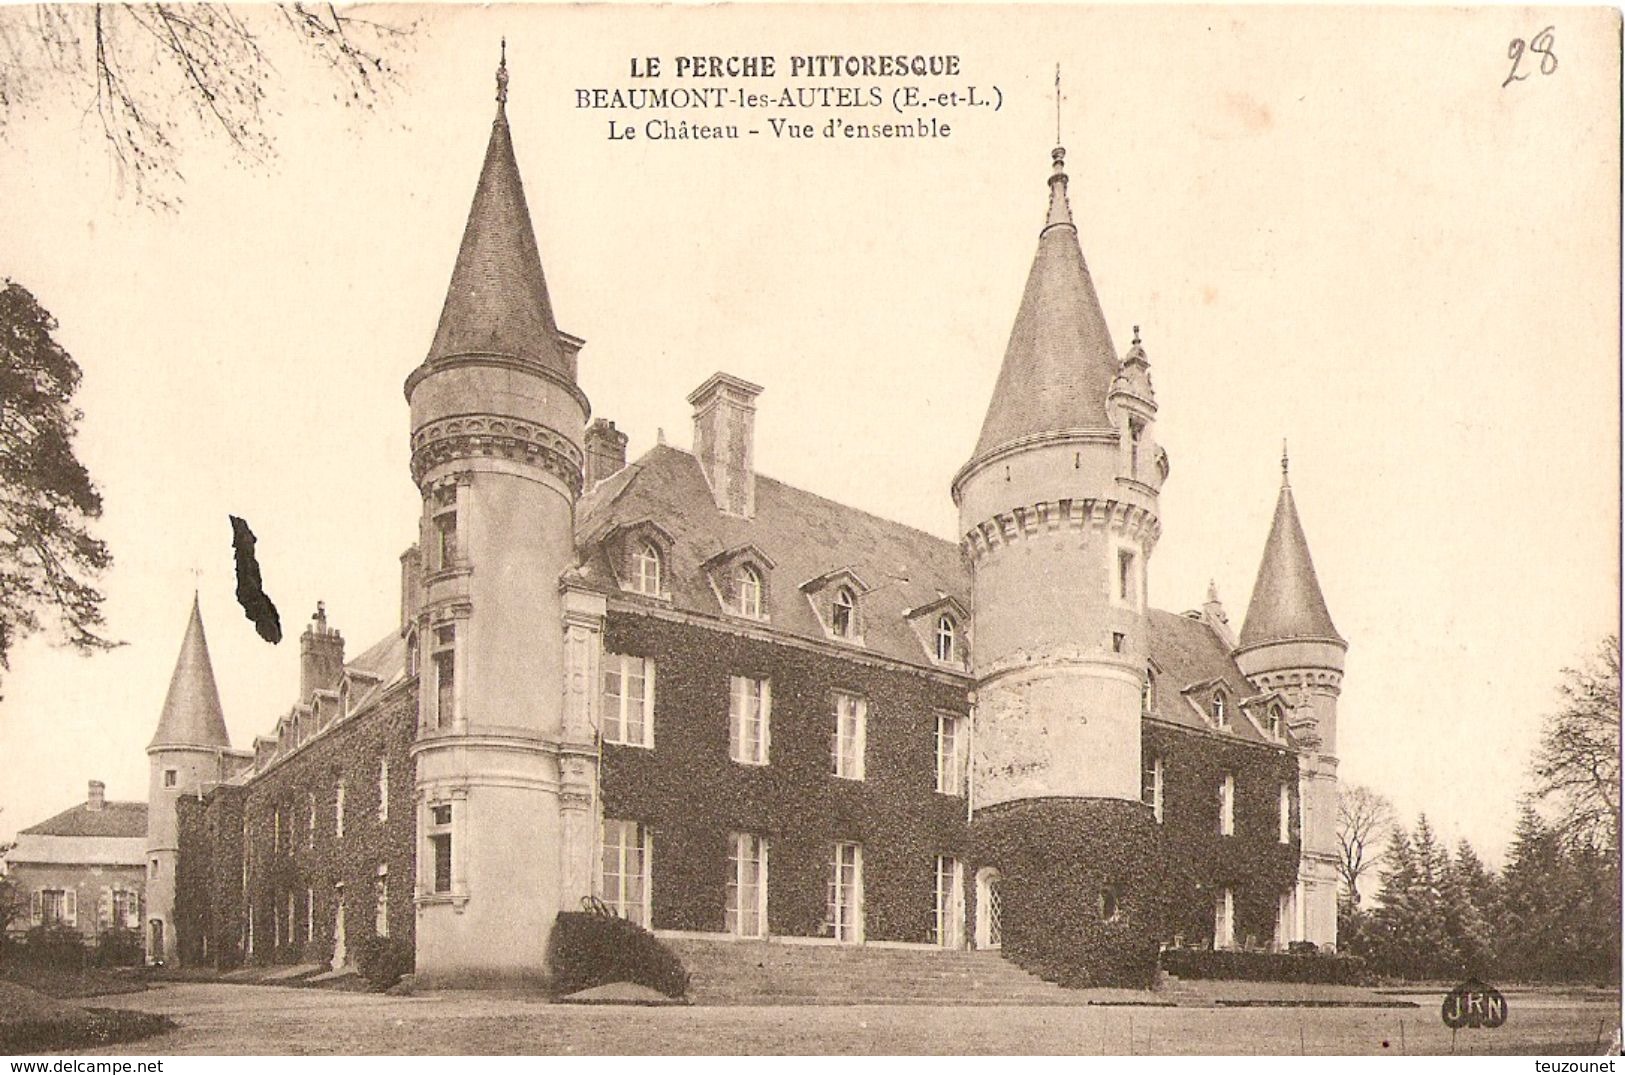 Département 28 Eure et Loire lot de 58 cartes postales 53 cpa, 4 cpsm et 1 cpm